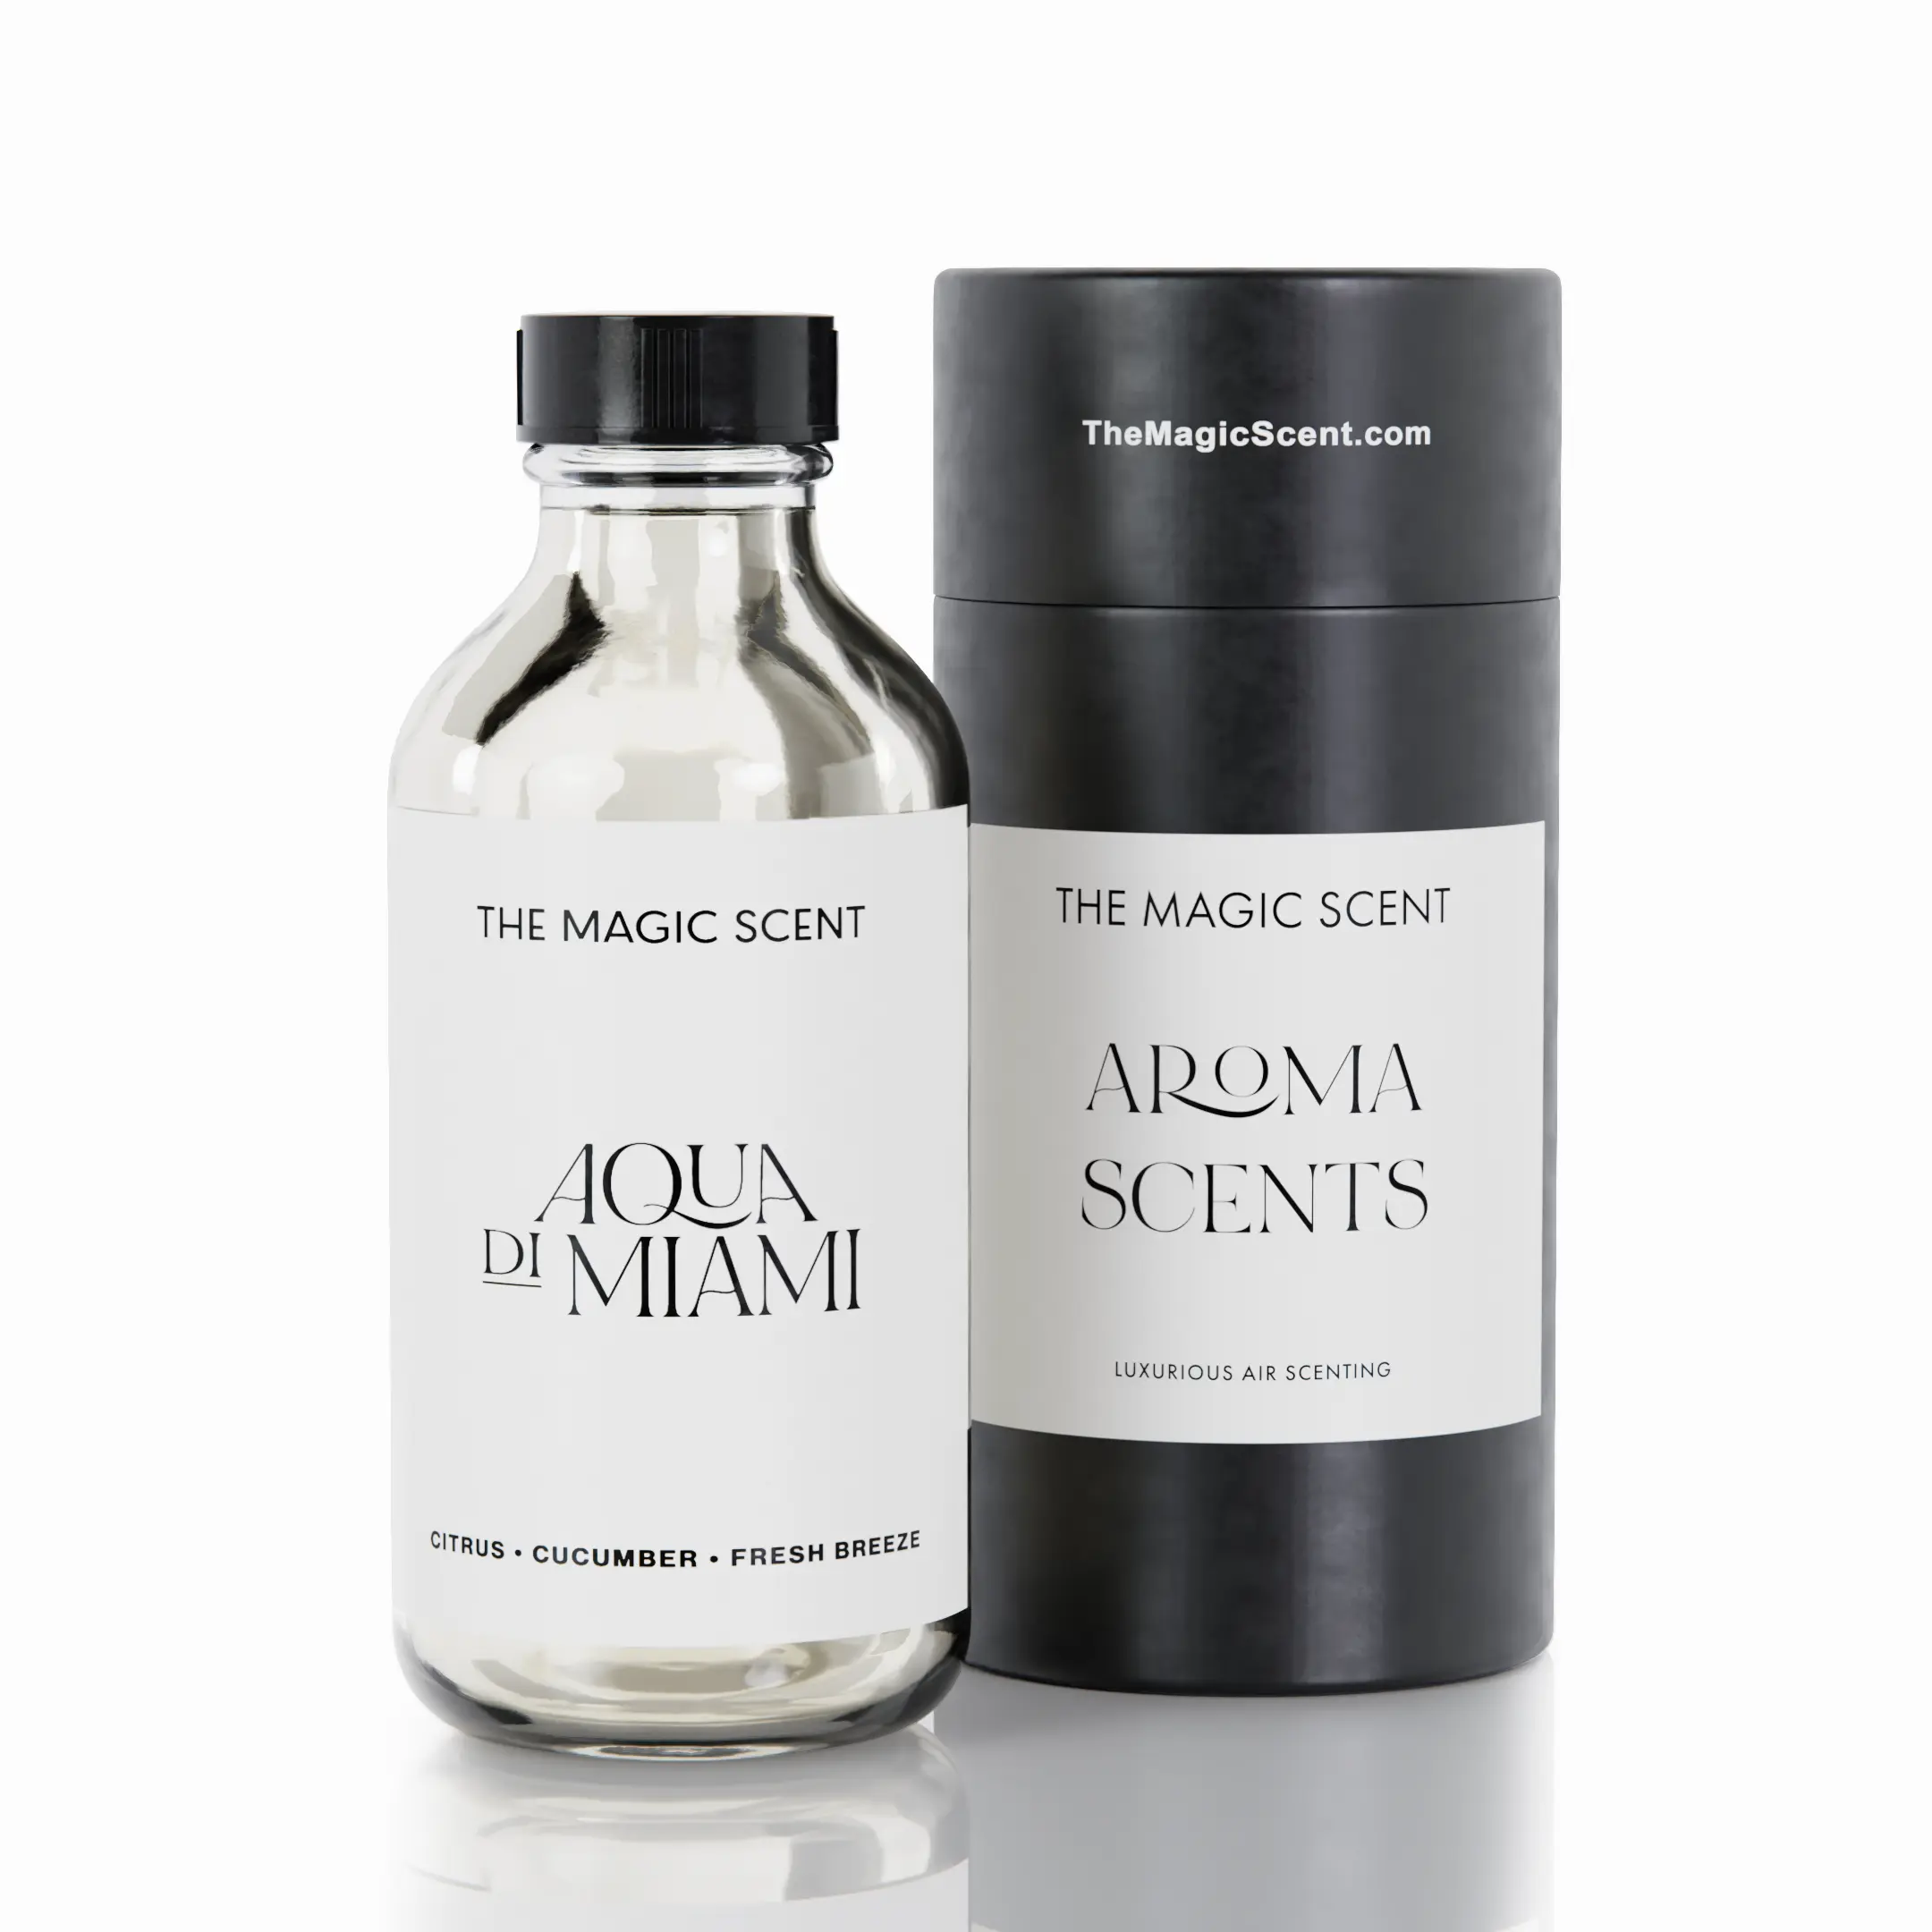 Aqua di Miami Diffuser Oil – The Magic Scent